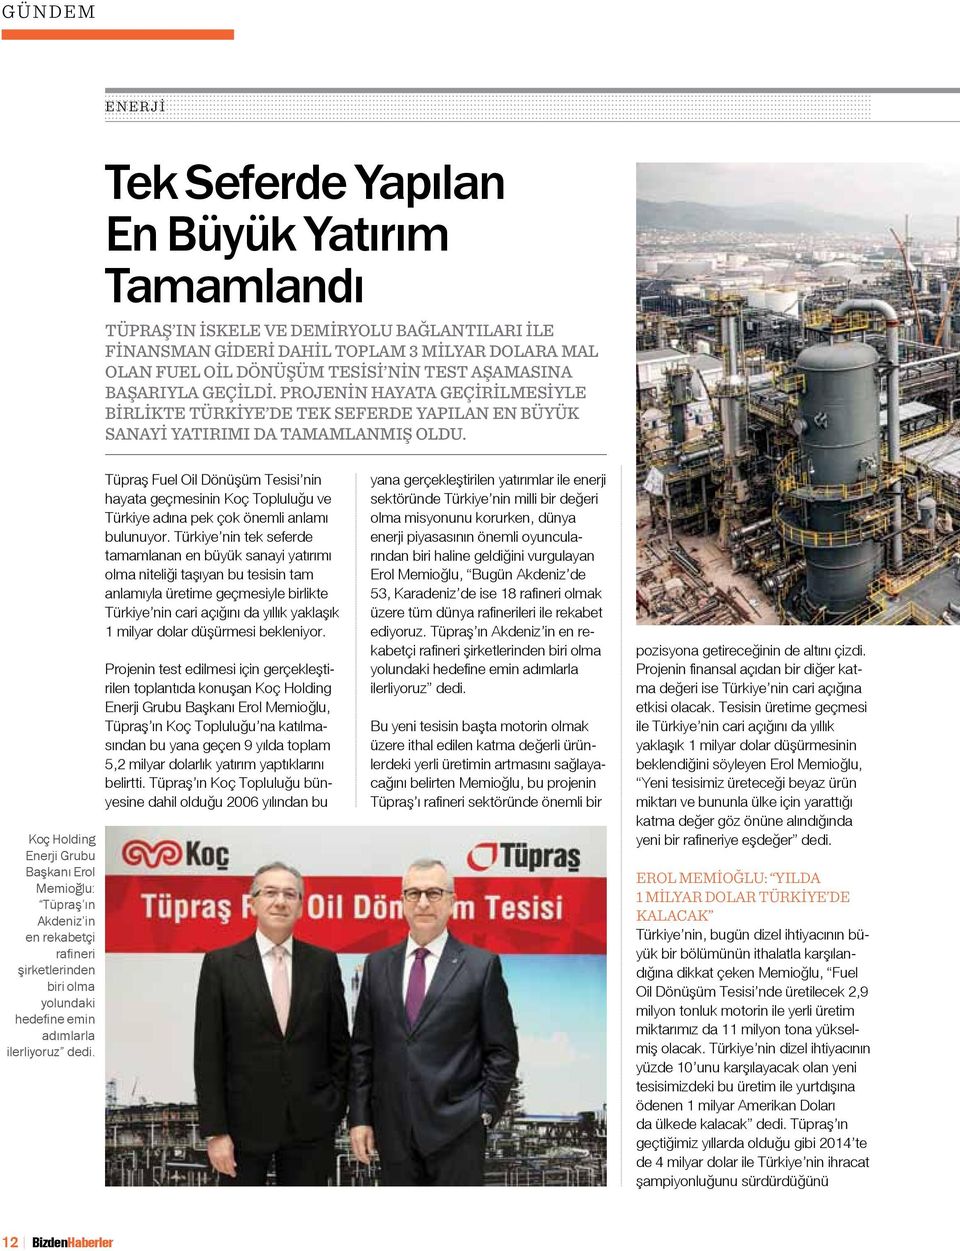 Koç Holding Enerji Grubu Başkanı Erol Memioğlu: Tüpraş ın Akdeniz in en rekabetçi rafineri şirketlerinden biri olma yolundaki hedefine emin adımlarla ilerliyoruz dedi.